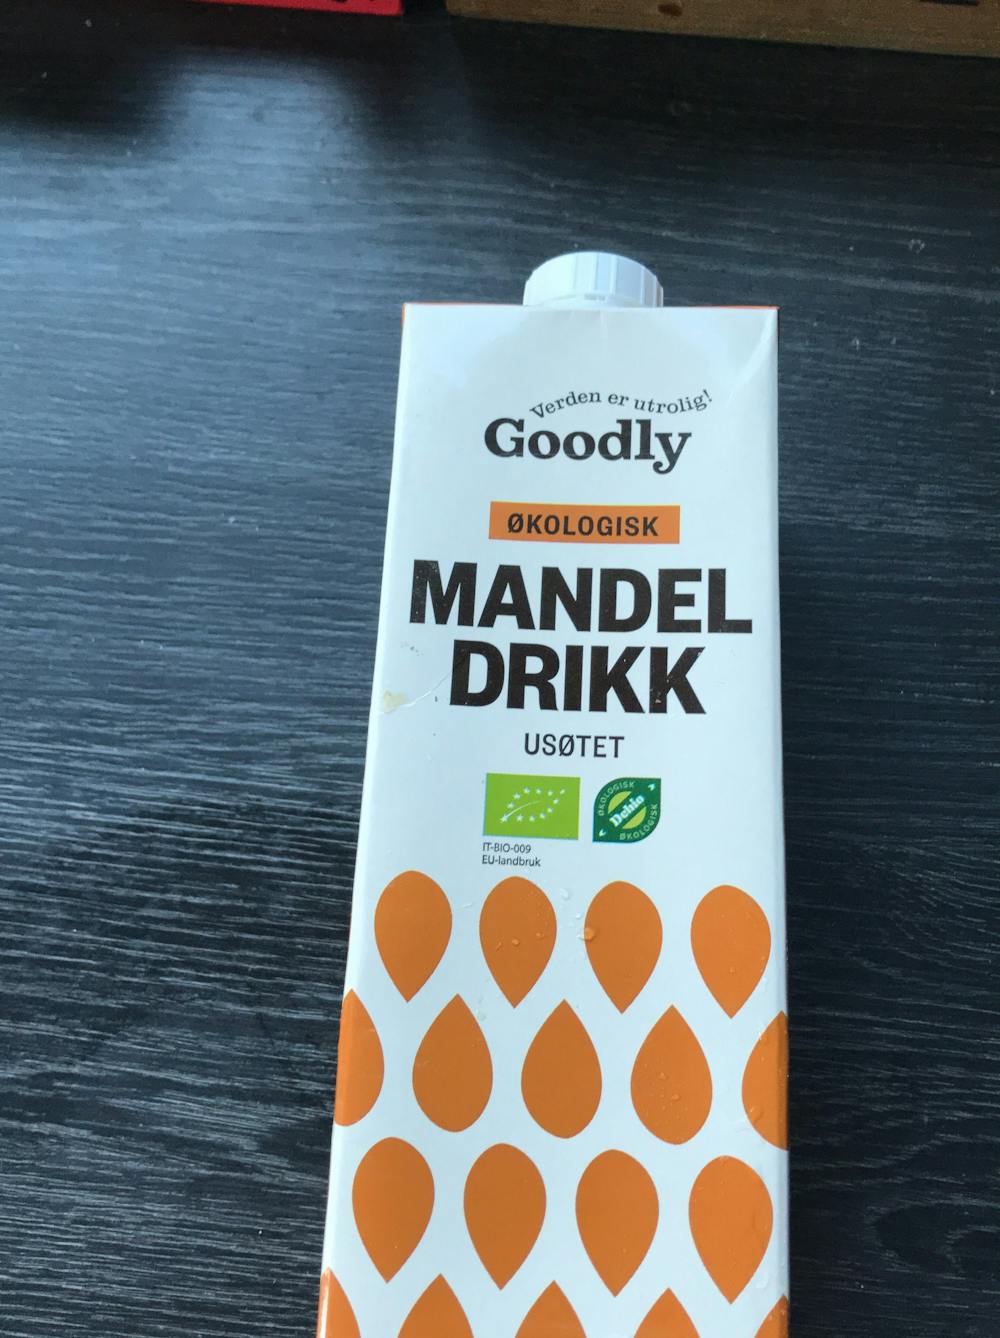 Mandeldrikk, Goodly